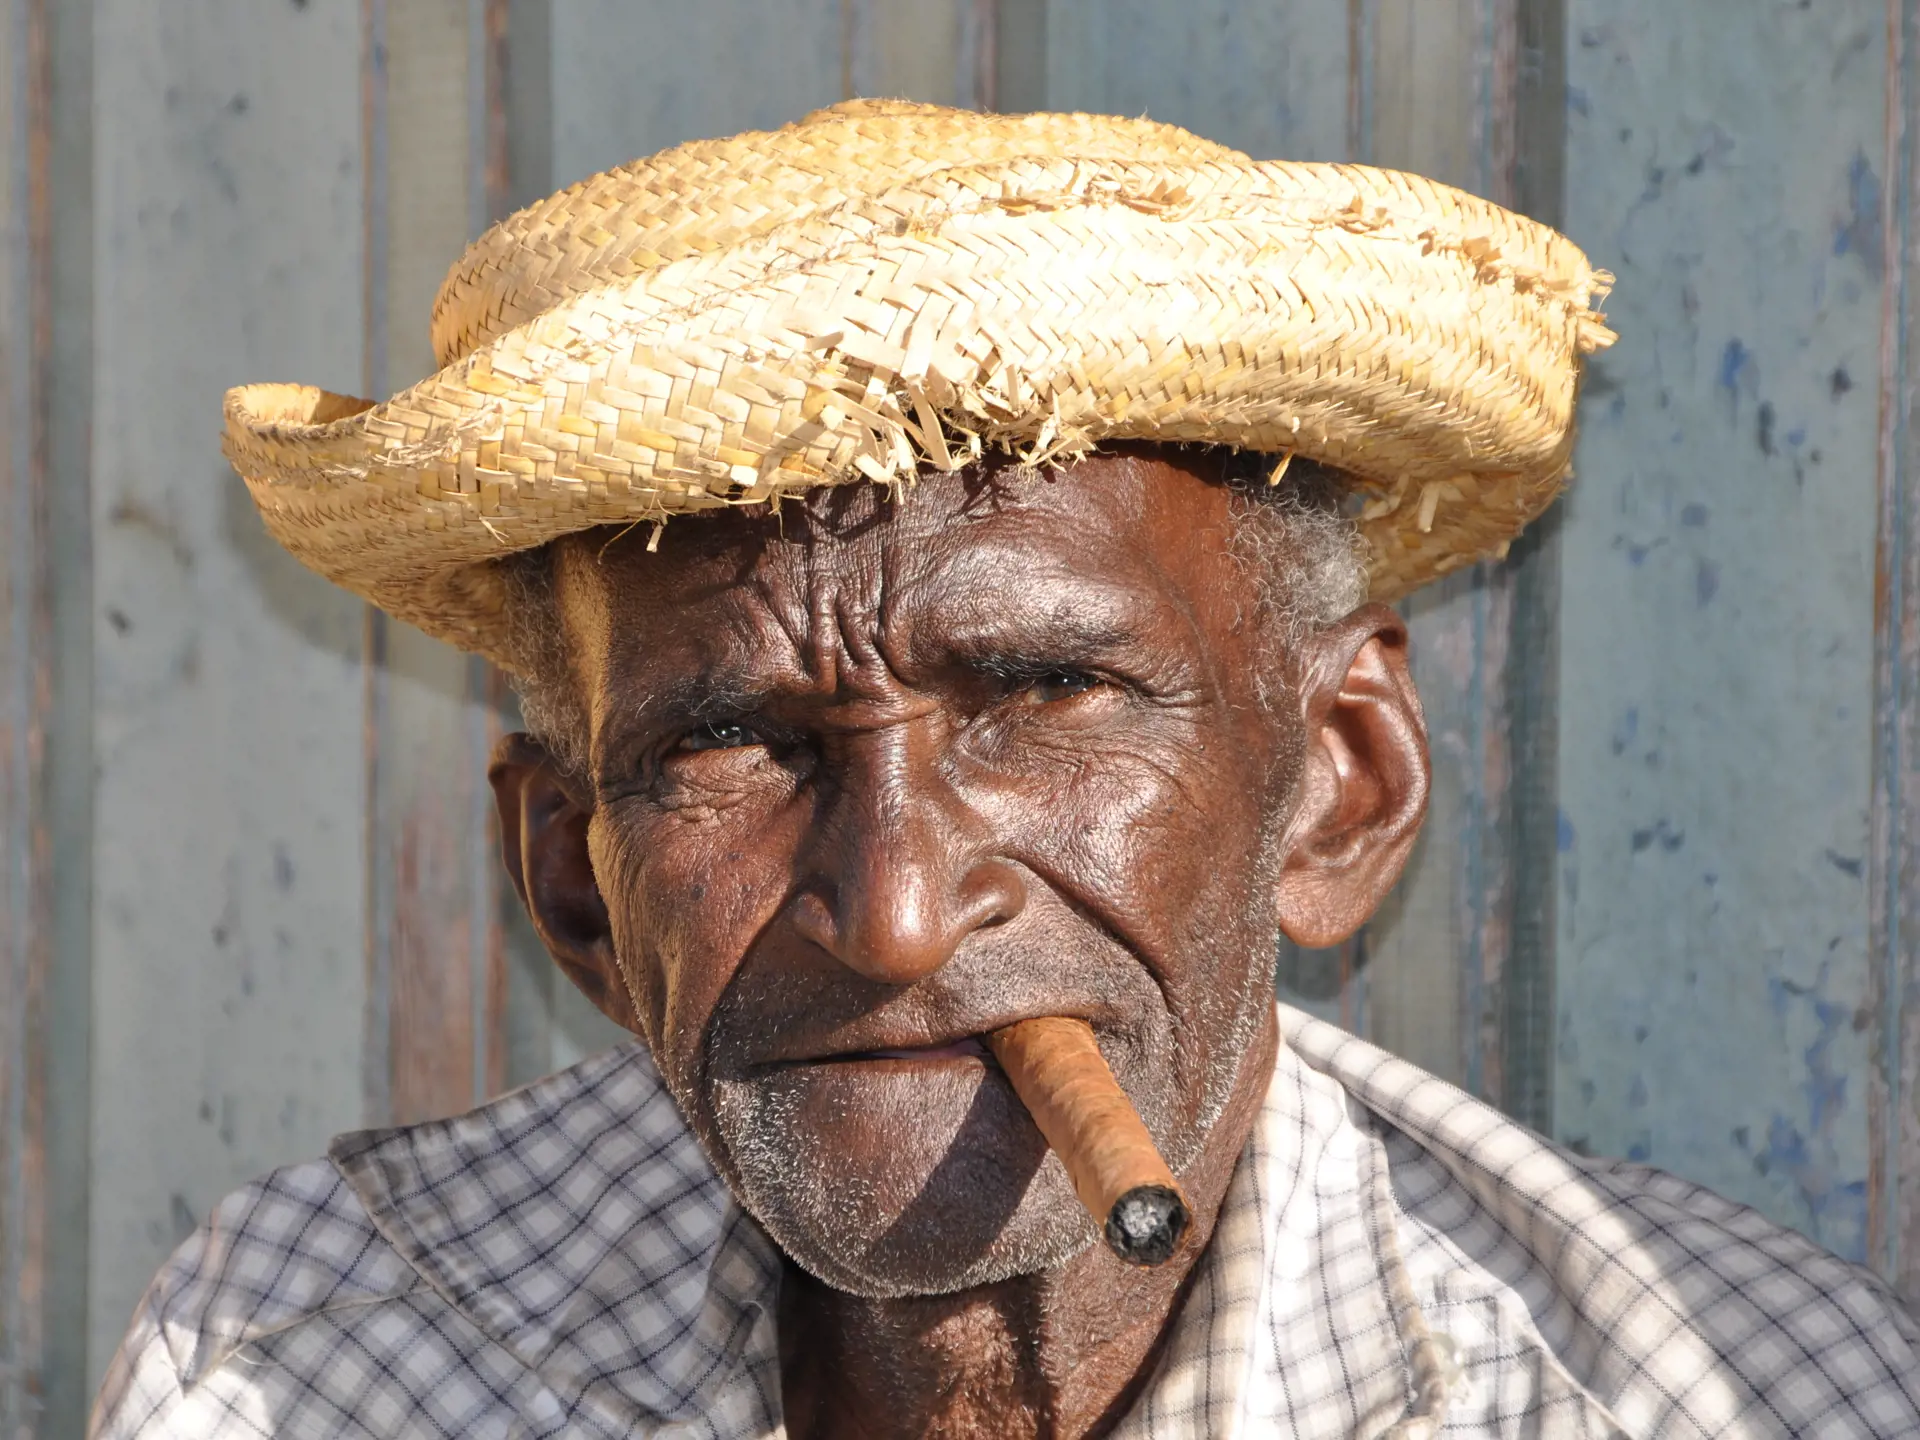 En rigtig cubaner med cigar og stråhat, Trinidad